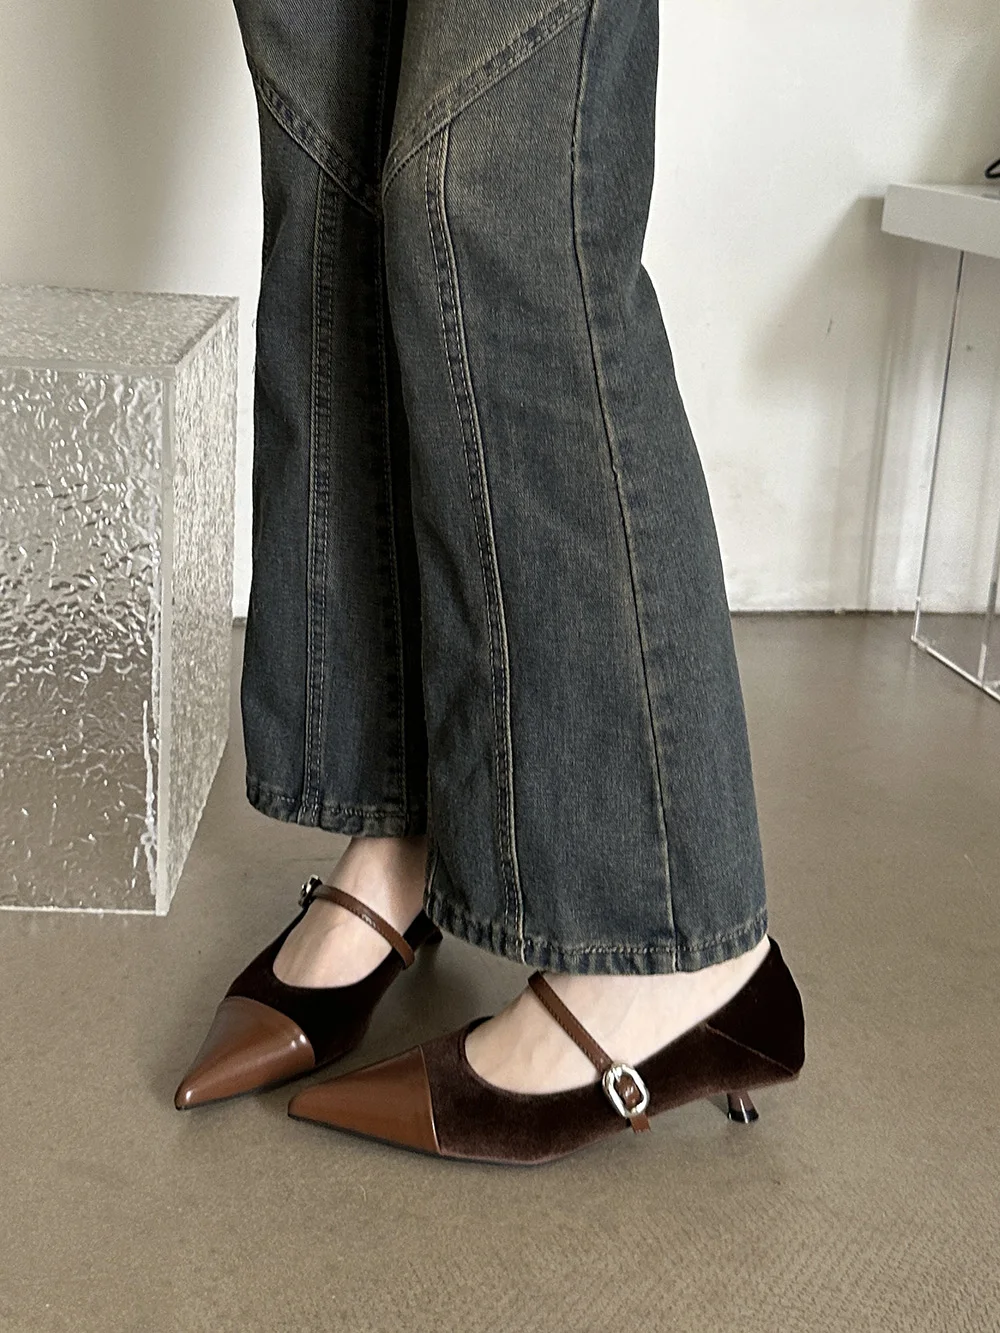 

Туфли-лодочки женские офисные, заостренный носок, без застежки, на тонком среднем каблуке, строгие, с пряжкой, черные, коричневые, Размеры 35-39